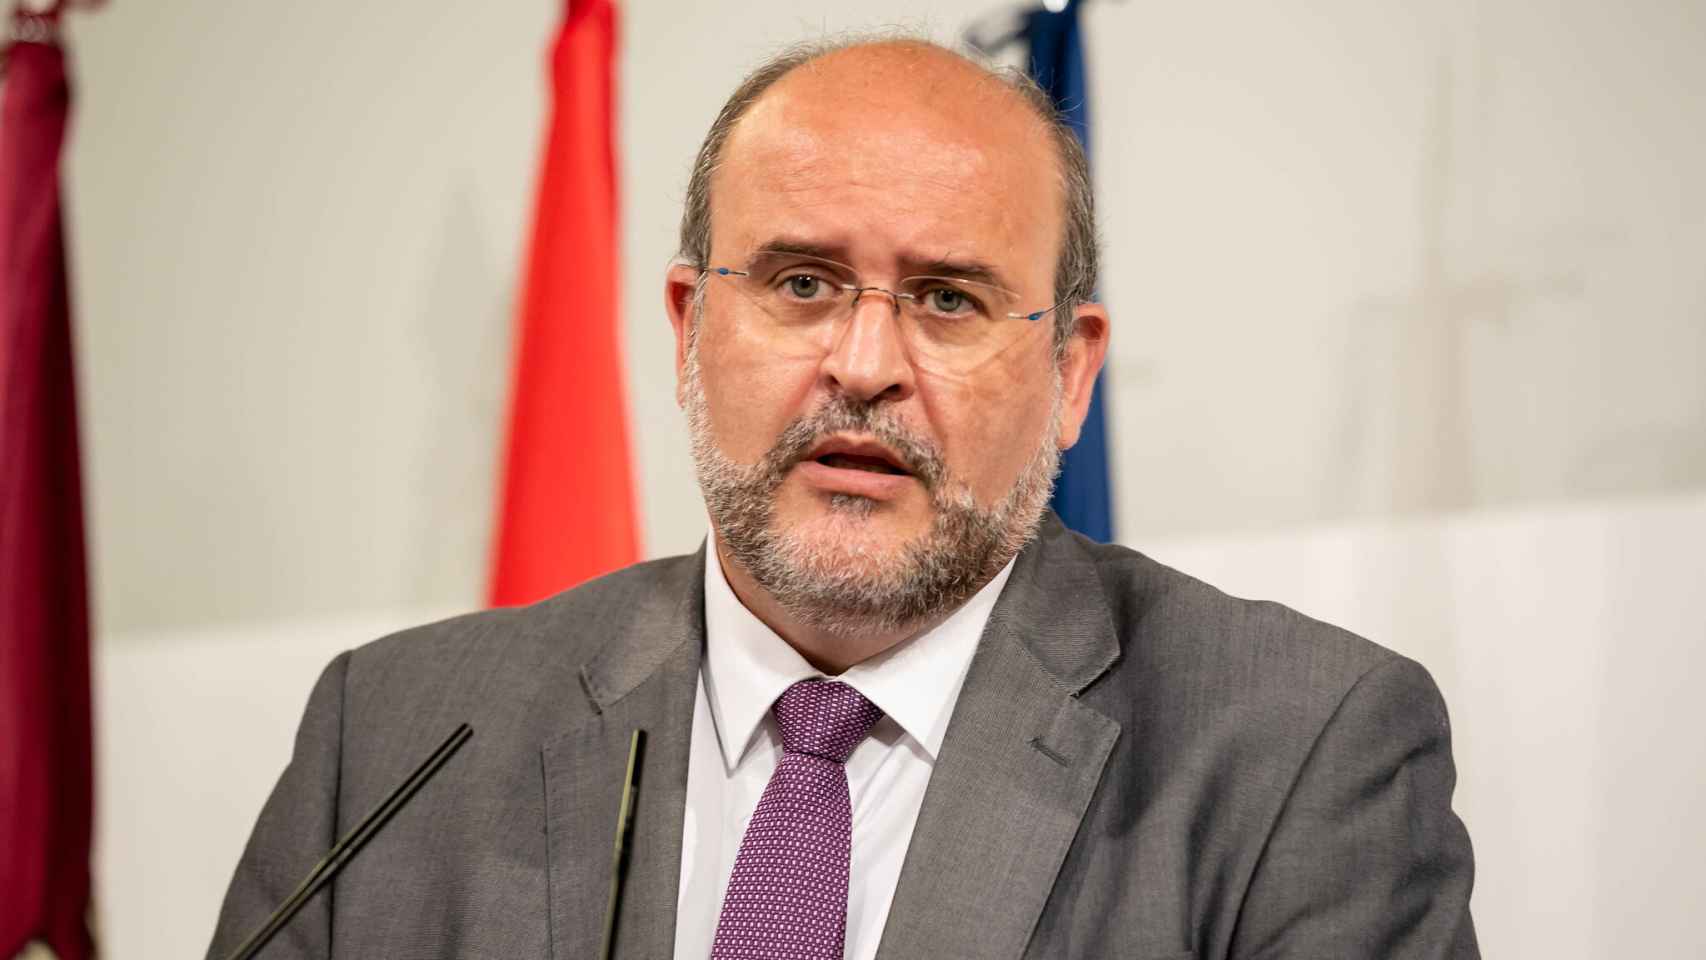 José Luis Martínez Guijarro, vicepresidente regional. Foto: Gobierno de Castilla-La Mancha